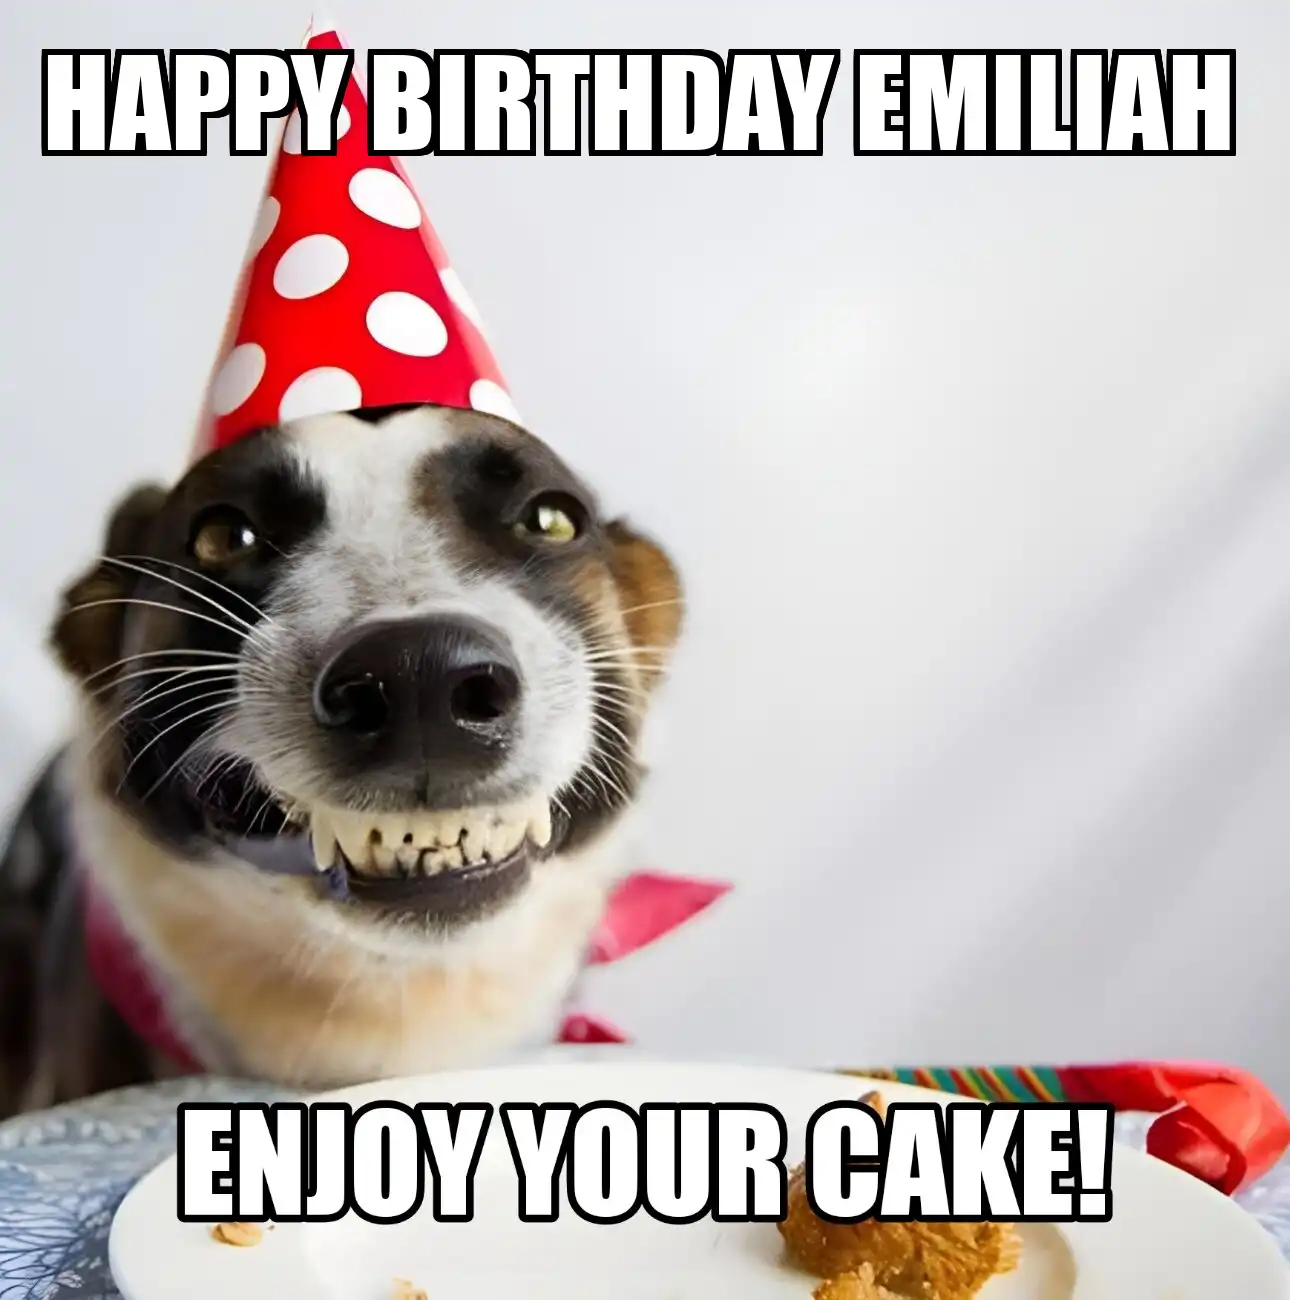 Happy Birthday Emiliah Enjoy Your Cake Dog Meme